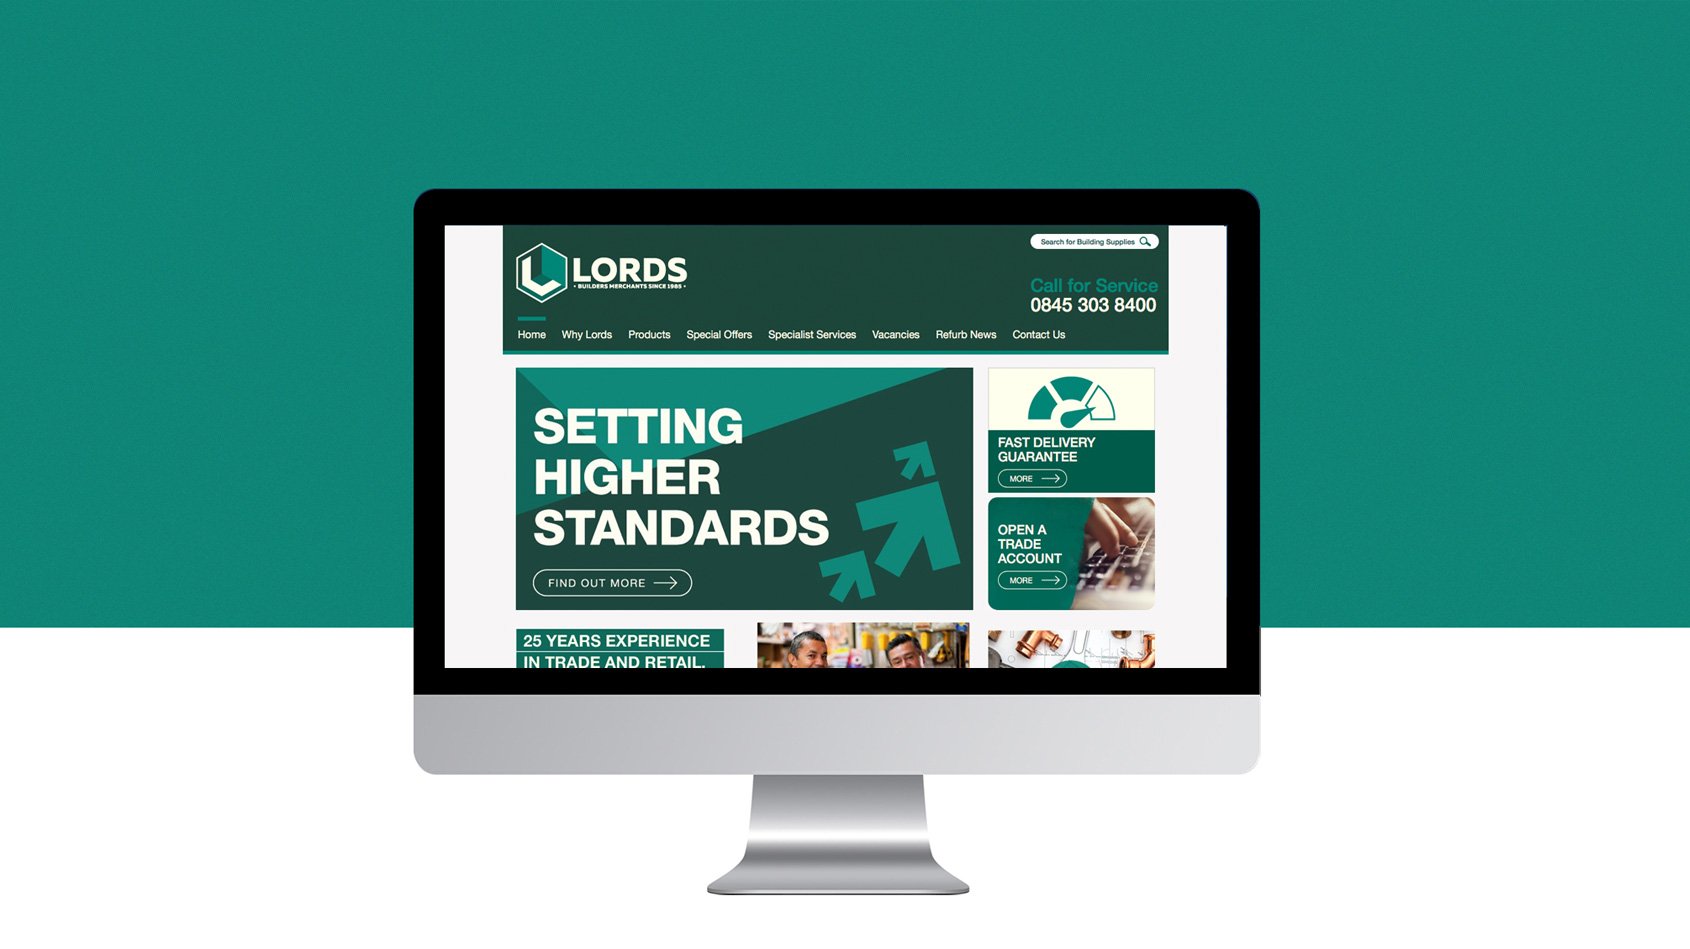 Lords-website-homepage